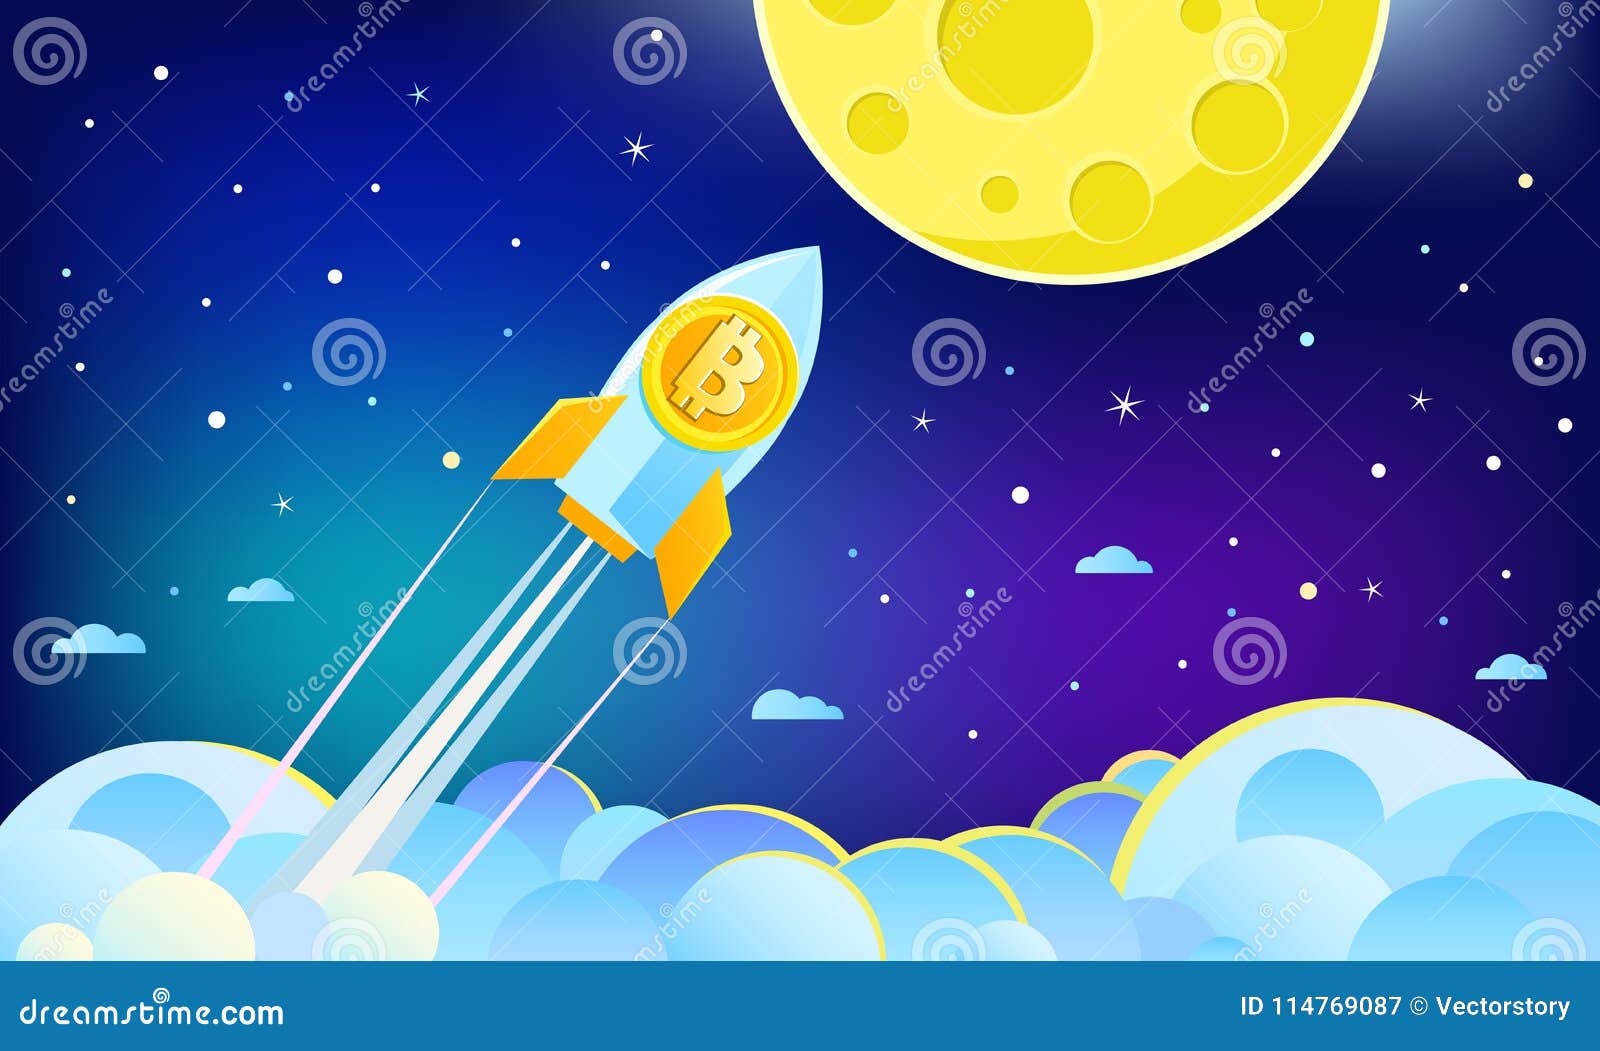 moon bitcoin hack